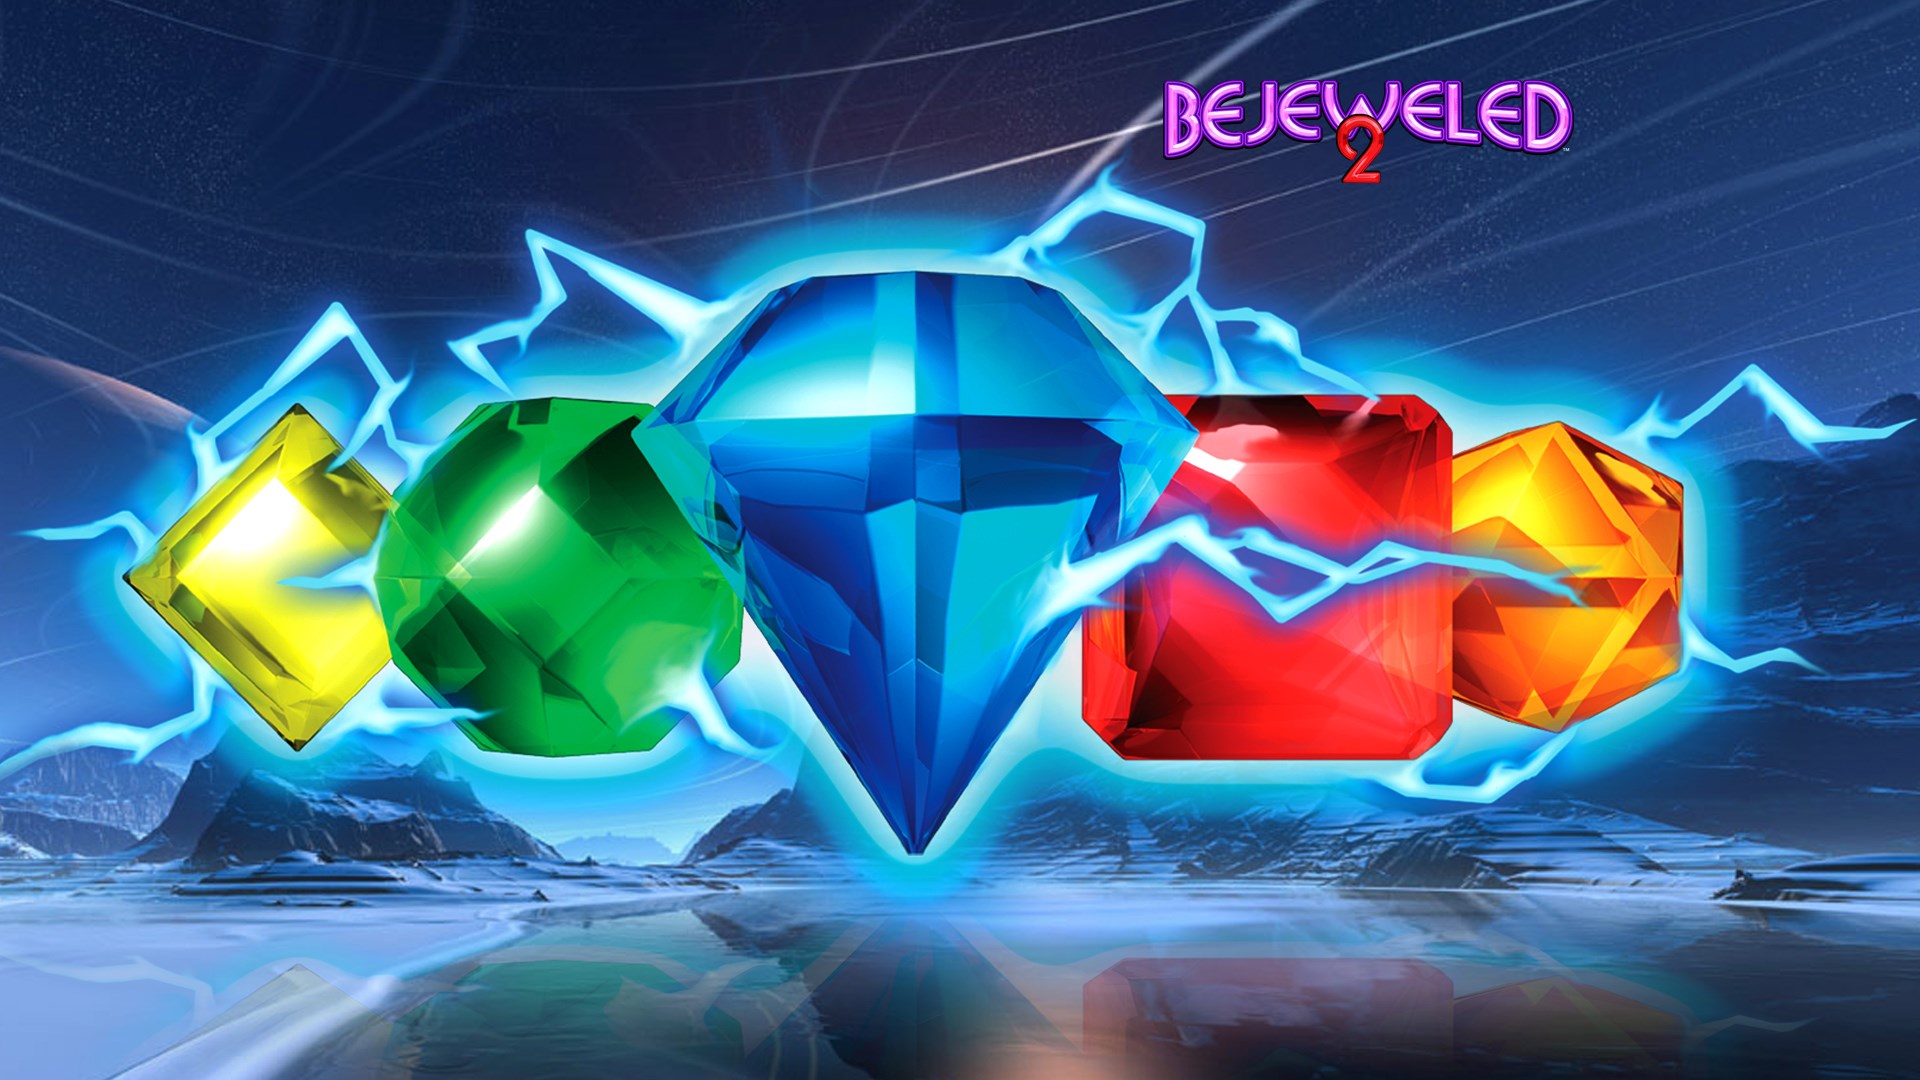 popcap bejeweled 2 deluxe download